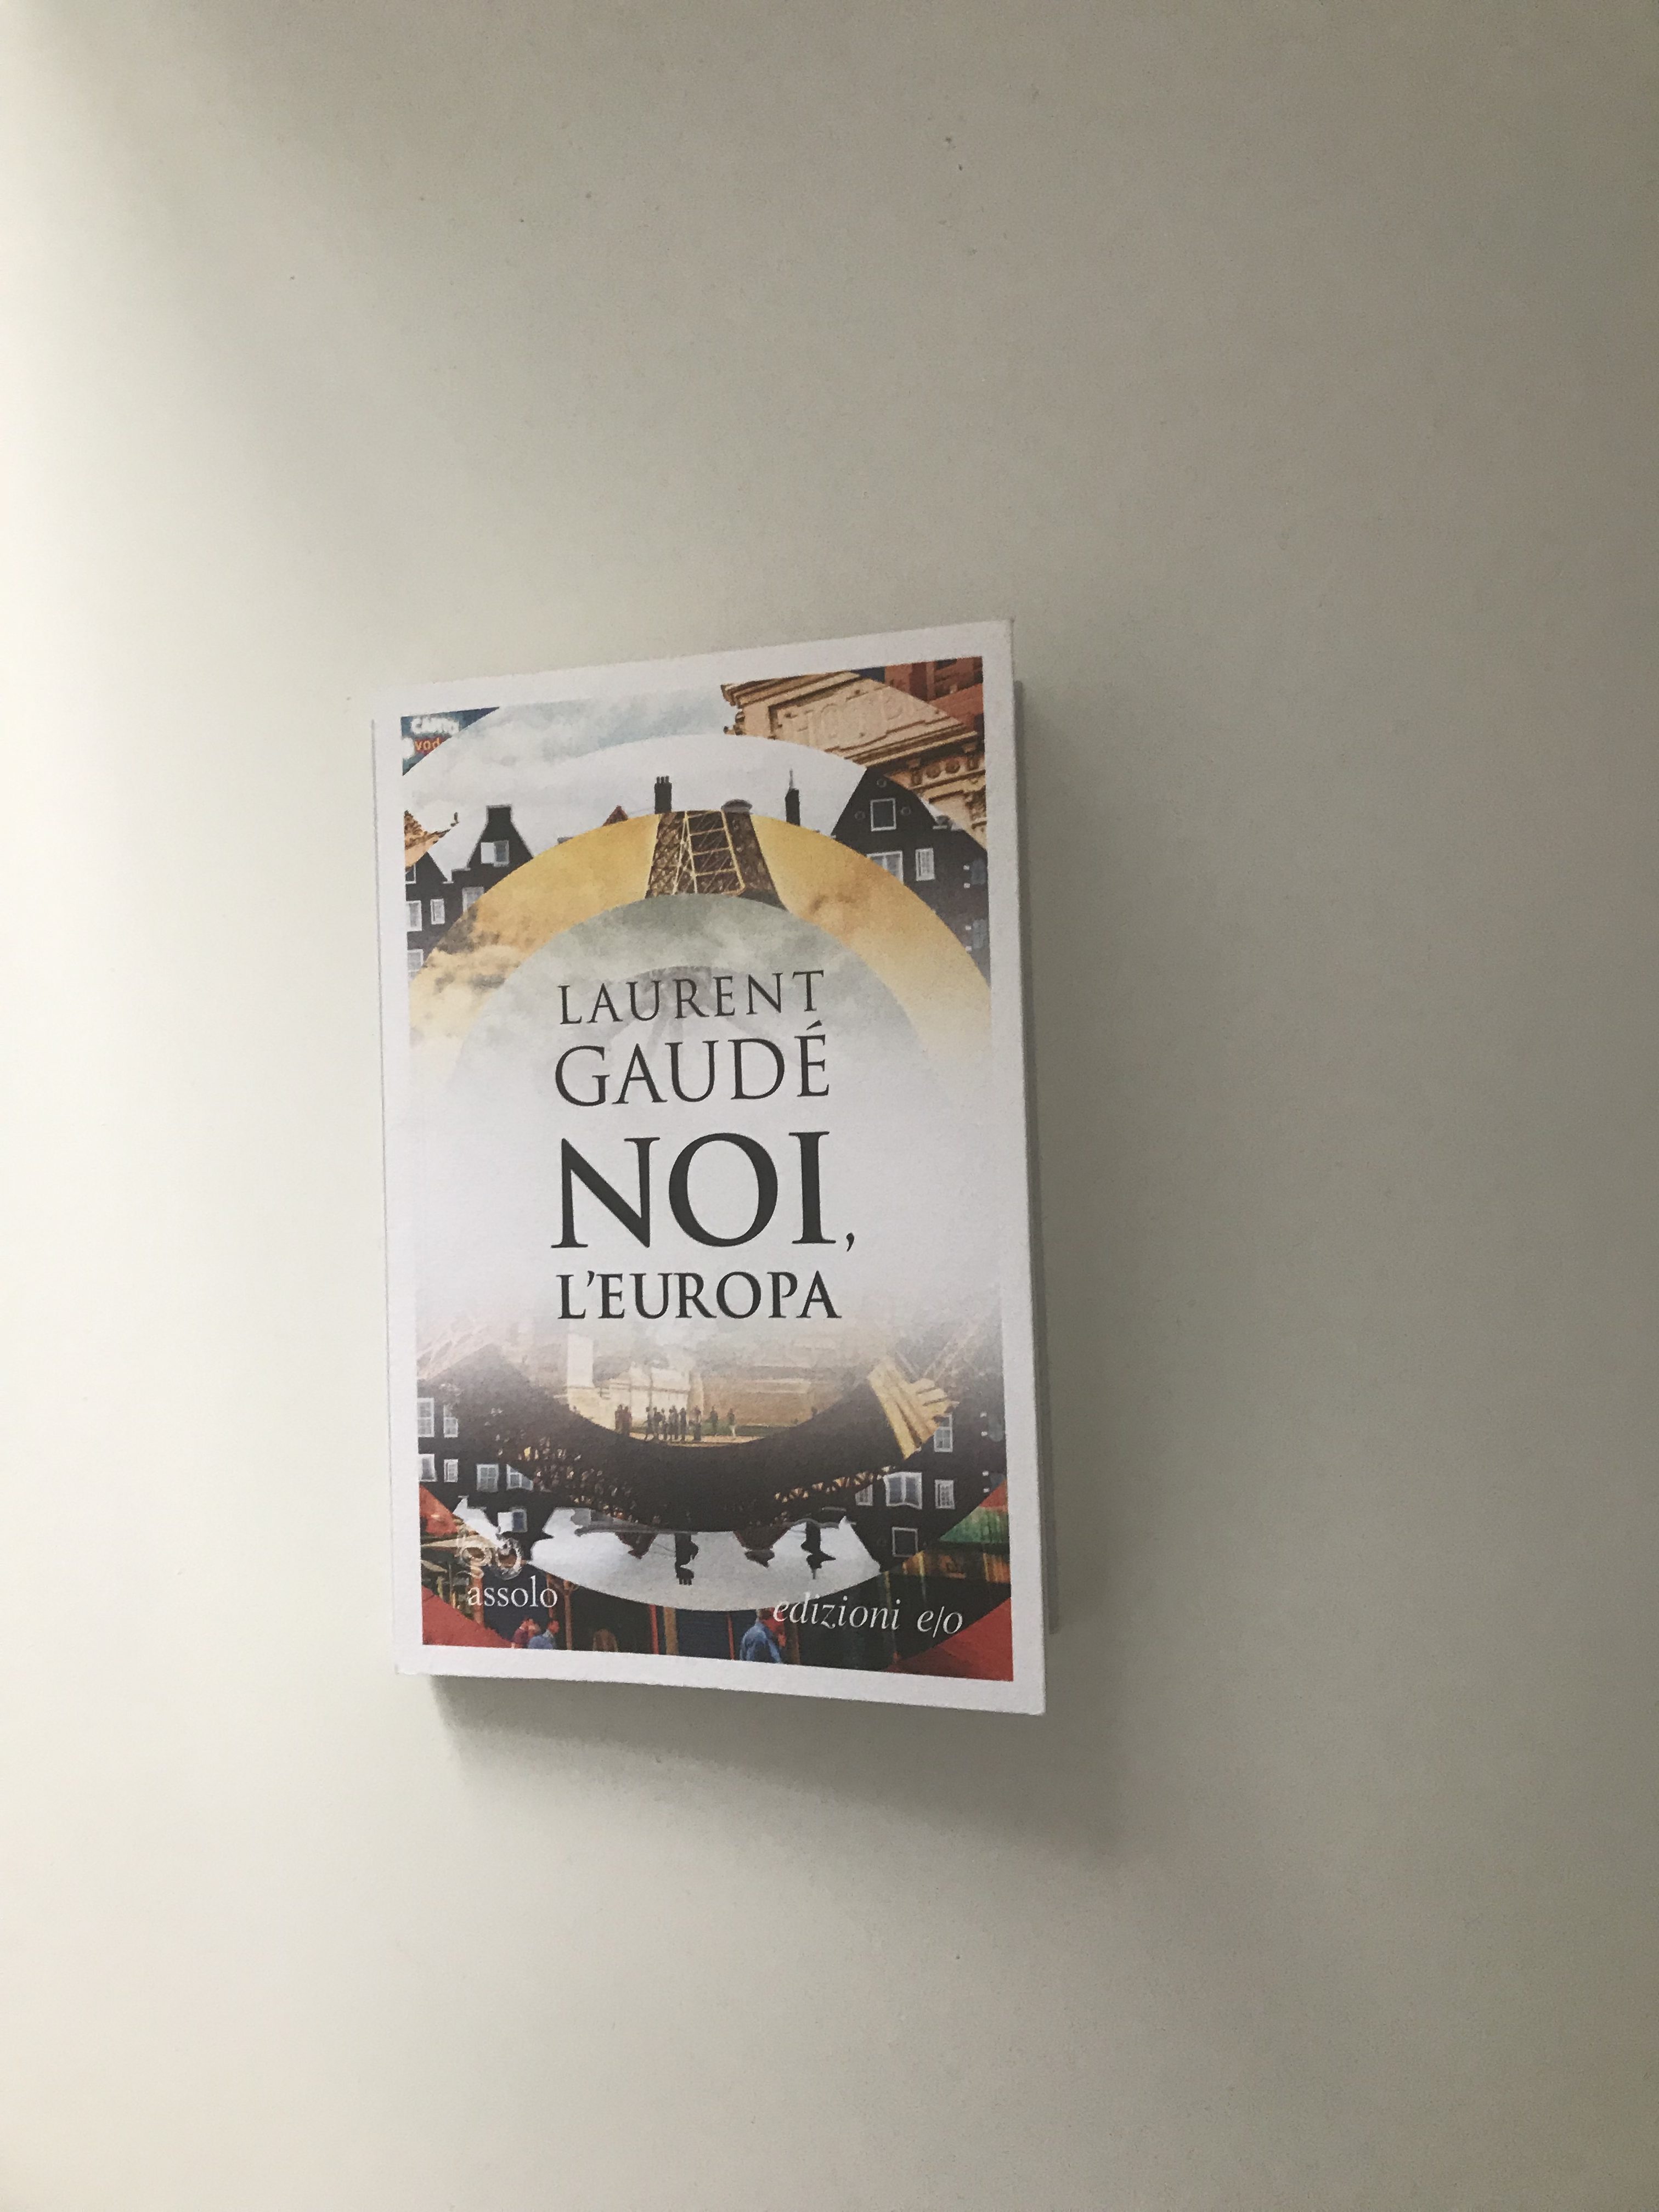 L’Europa allo specchio: “Noi, l’Europa” di Laurent Gaudé